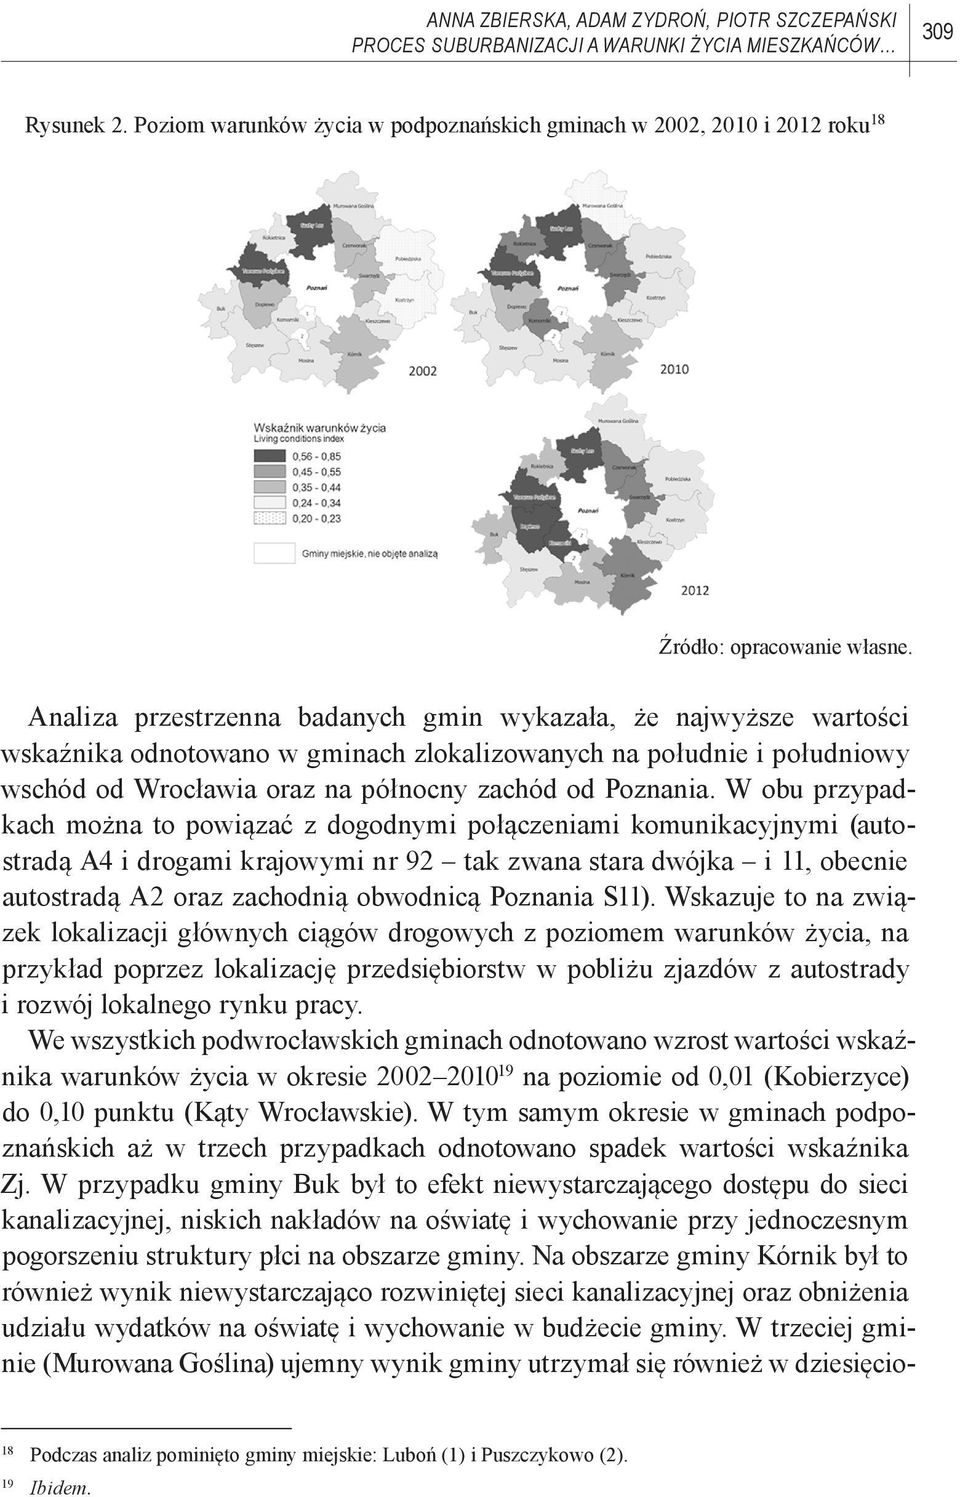 Analiza przestrzenna badanych gmin wykazała, że najwyższe wartości wskaźnika odnotowano w gminach zlokalizowanych na południe i południowy wschód od Wrocławia oraz na północny zachód od Poznania.